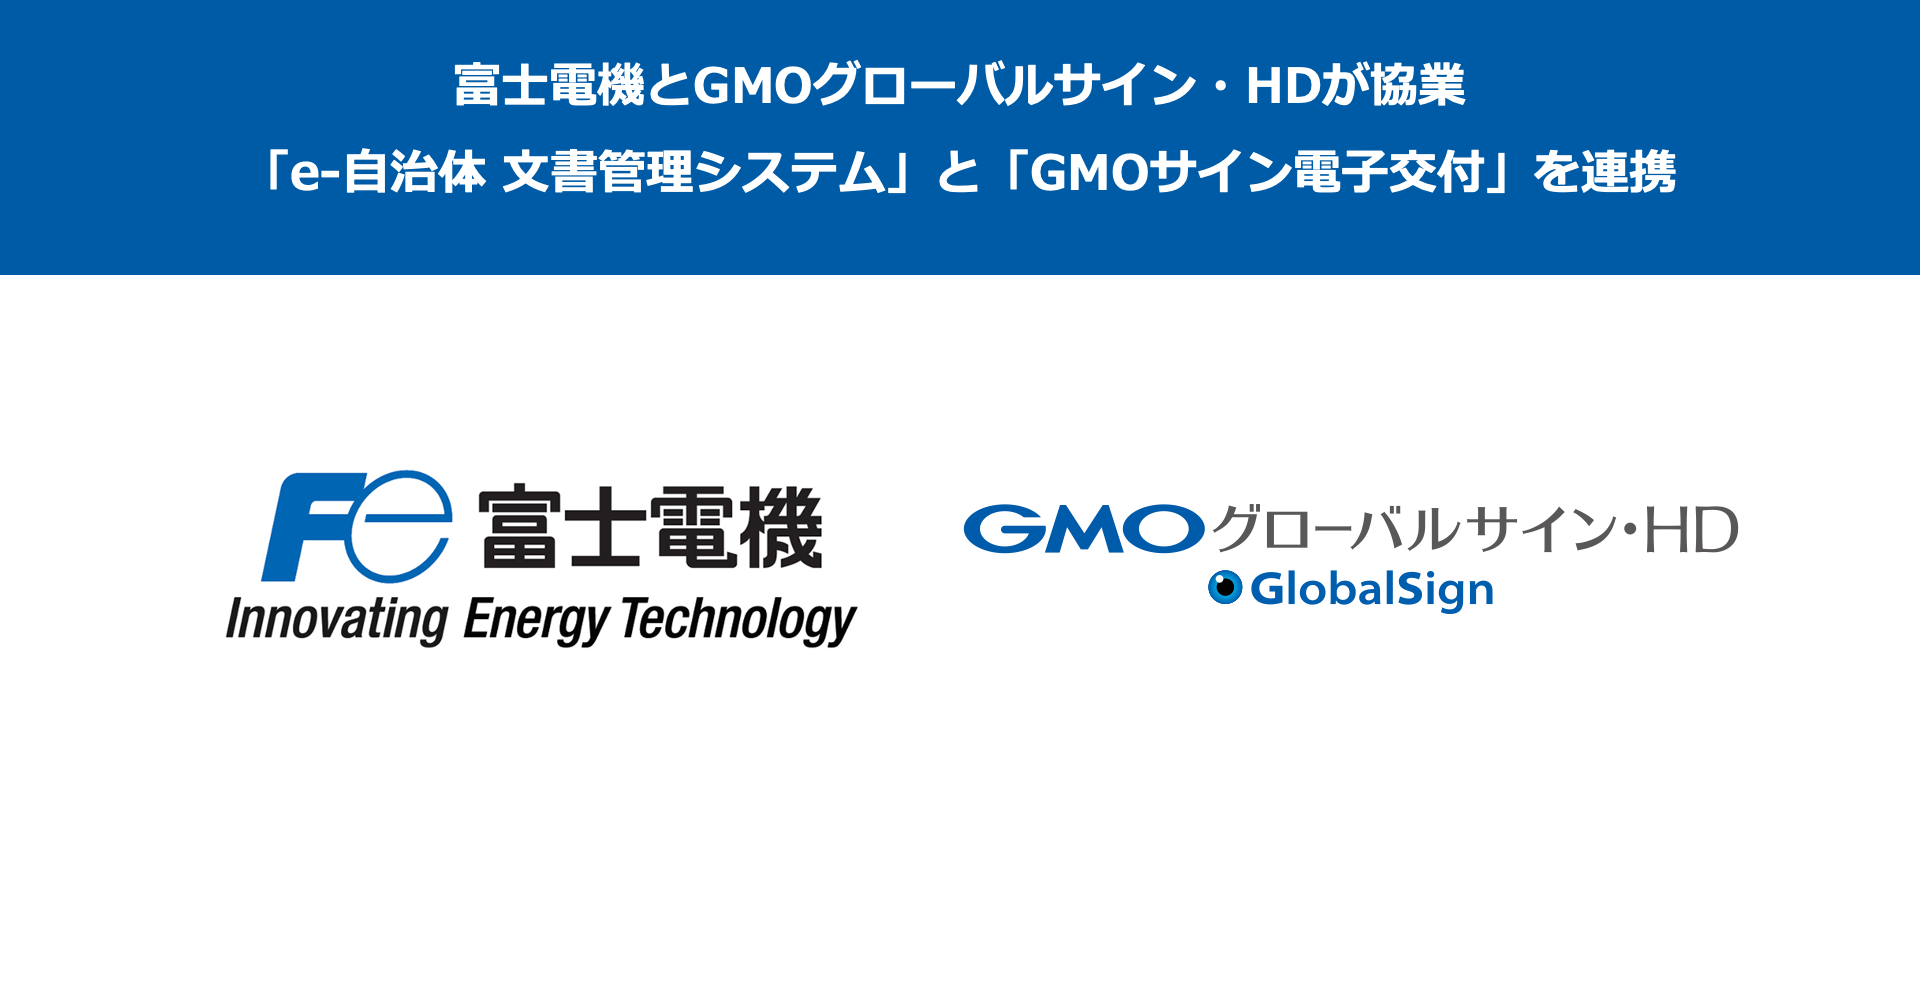 富士電機とGMOグローバルサイン・HDが協業
「e-自治体 文書管理システム」と『GMOサイン電子交付』を連携